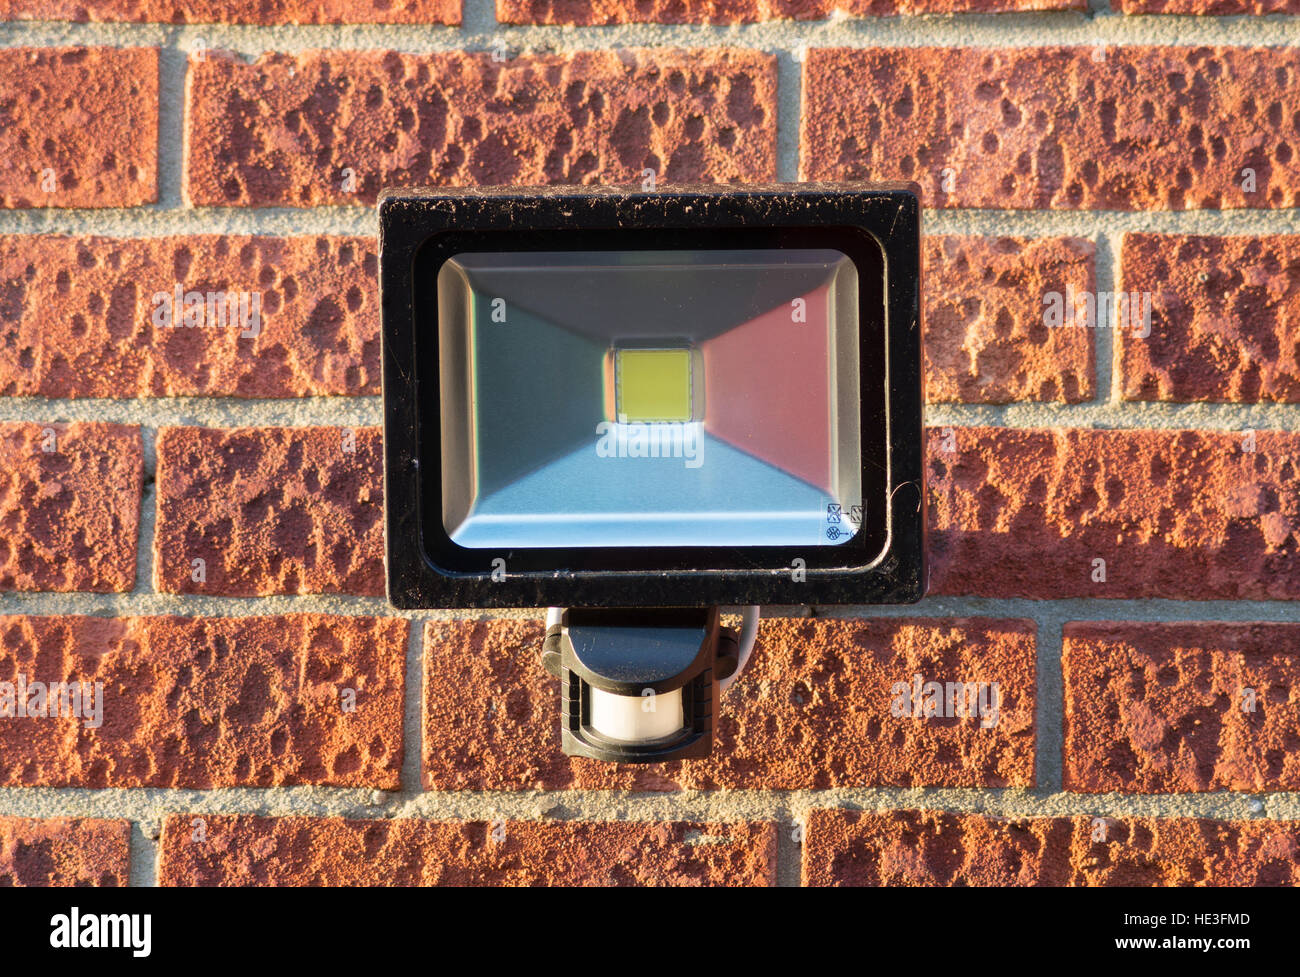 LED-Sicherheit-Strahler mit integraler PIR-Bewegungsmelder, die auf eine äußere Mauer montiert. England, UK. Stockfoto